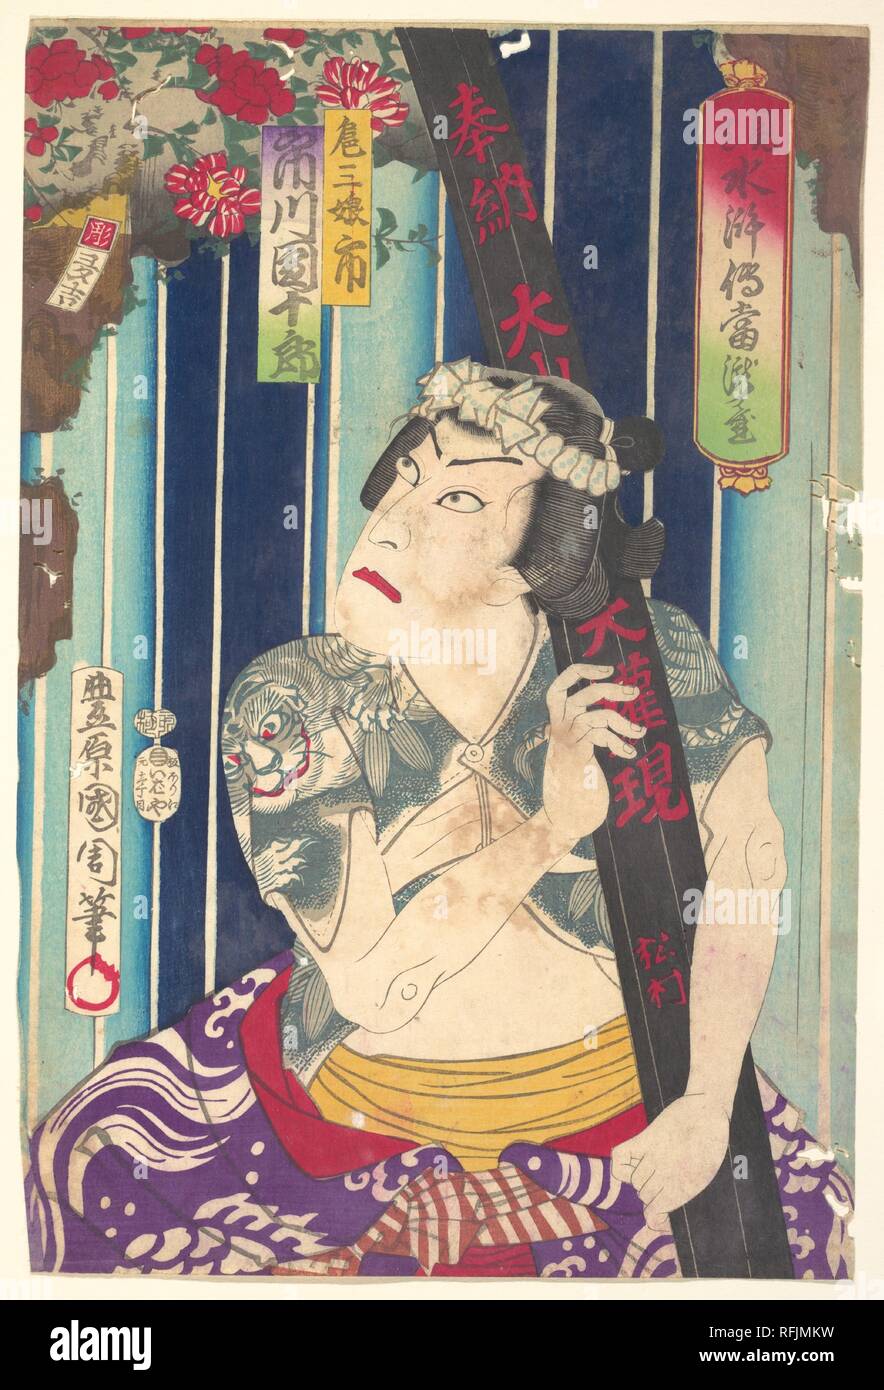 Portrait imaginaire, de l'étape : Toryudai Shuihuzhuan (Mitate) Torodai Books Harry Potter - Acteur Ichikawa Danjuro, joue comme Sanjo. Toyohara Kunichika (artiste : japonais, 1835-1900). Culture : le Japon. Dimensions : 14 1/8 x 9 1/2 in. (35,9 x 24,1 cm). Date : 1875. Musée : Metropolitan Museum of Art, New York, USA. Banque D'Images